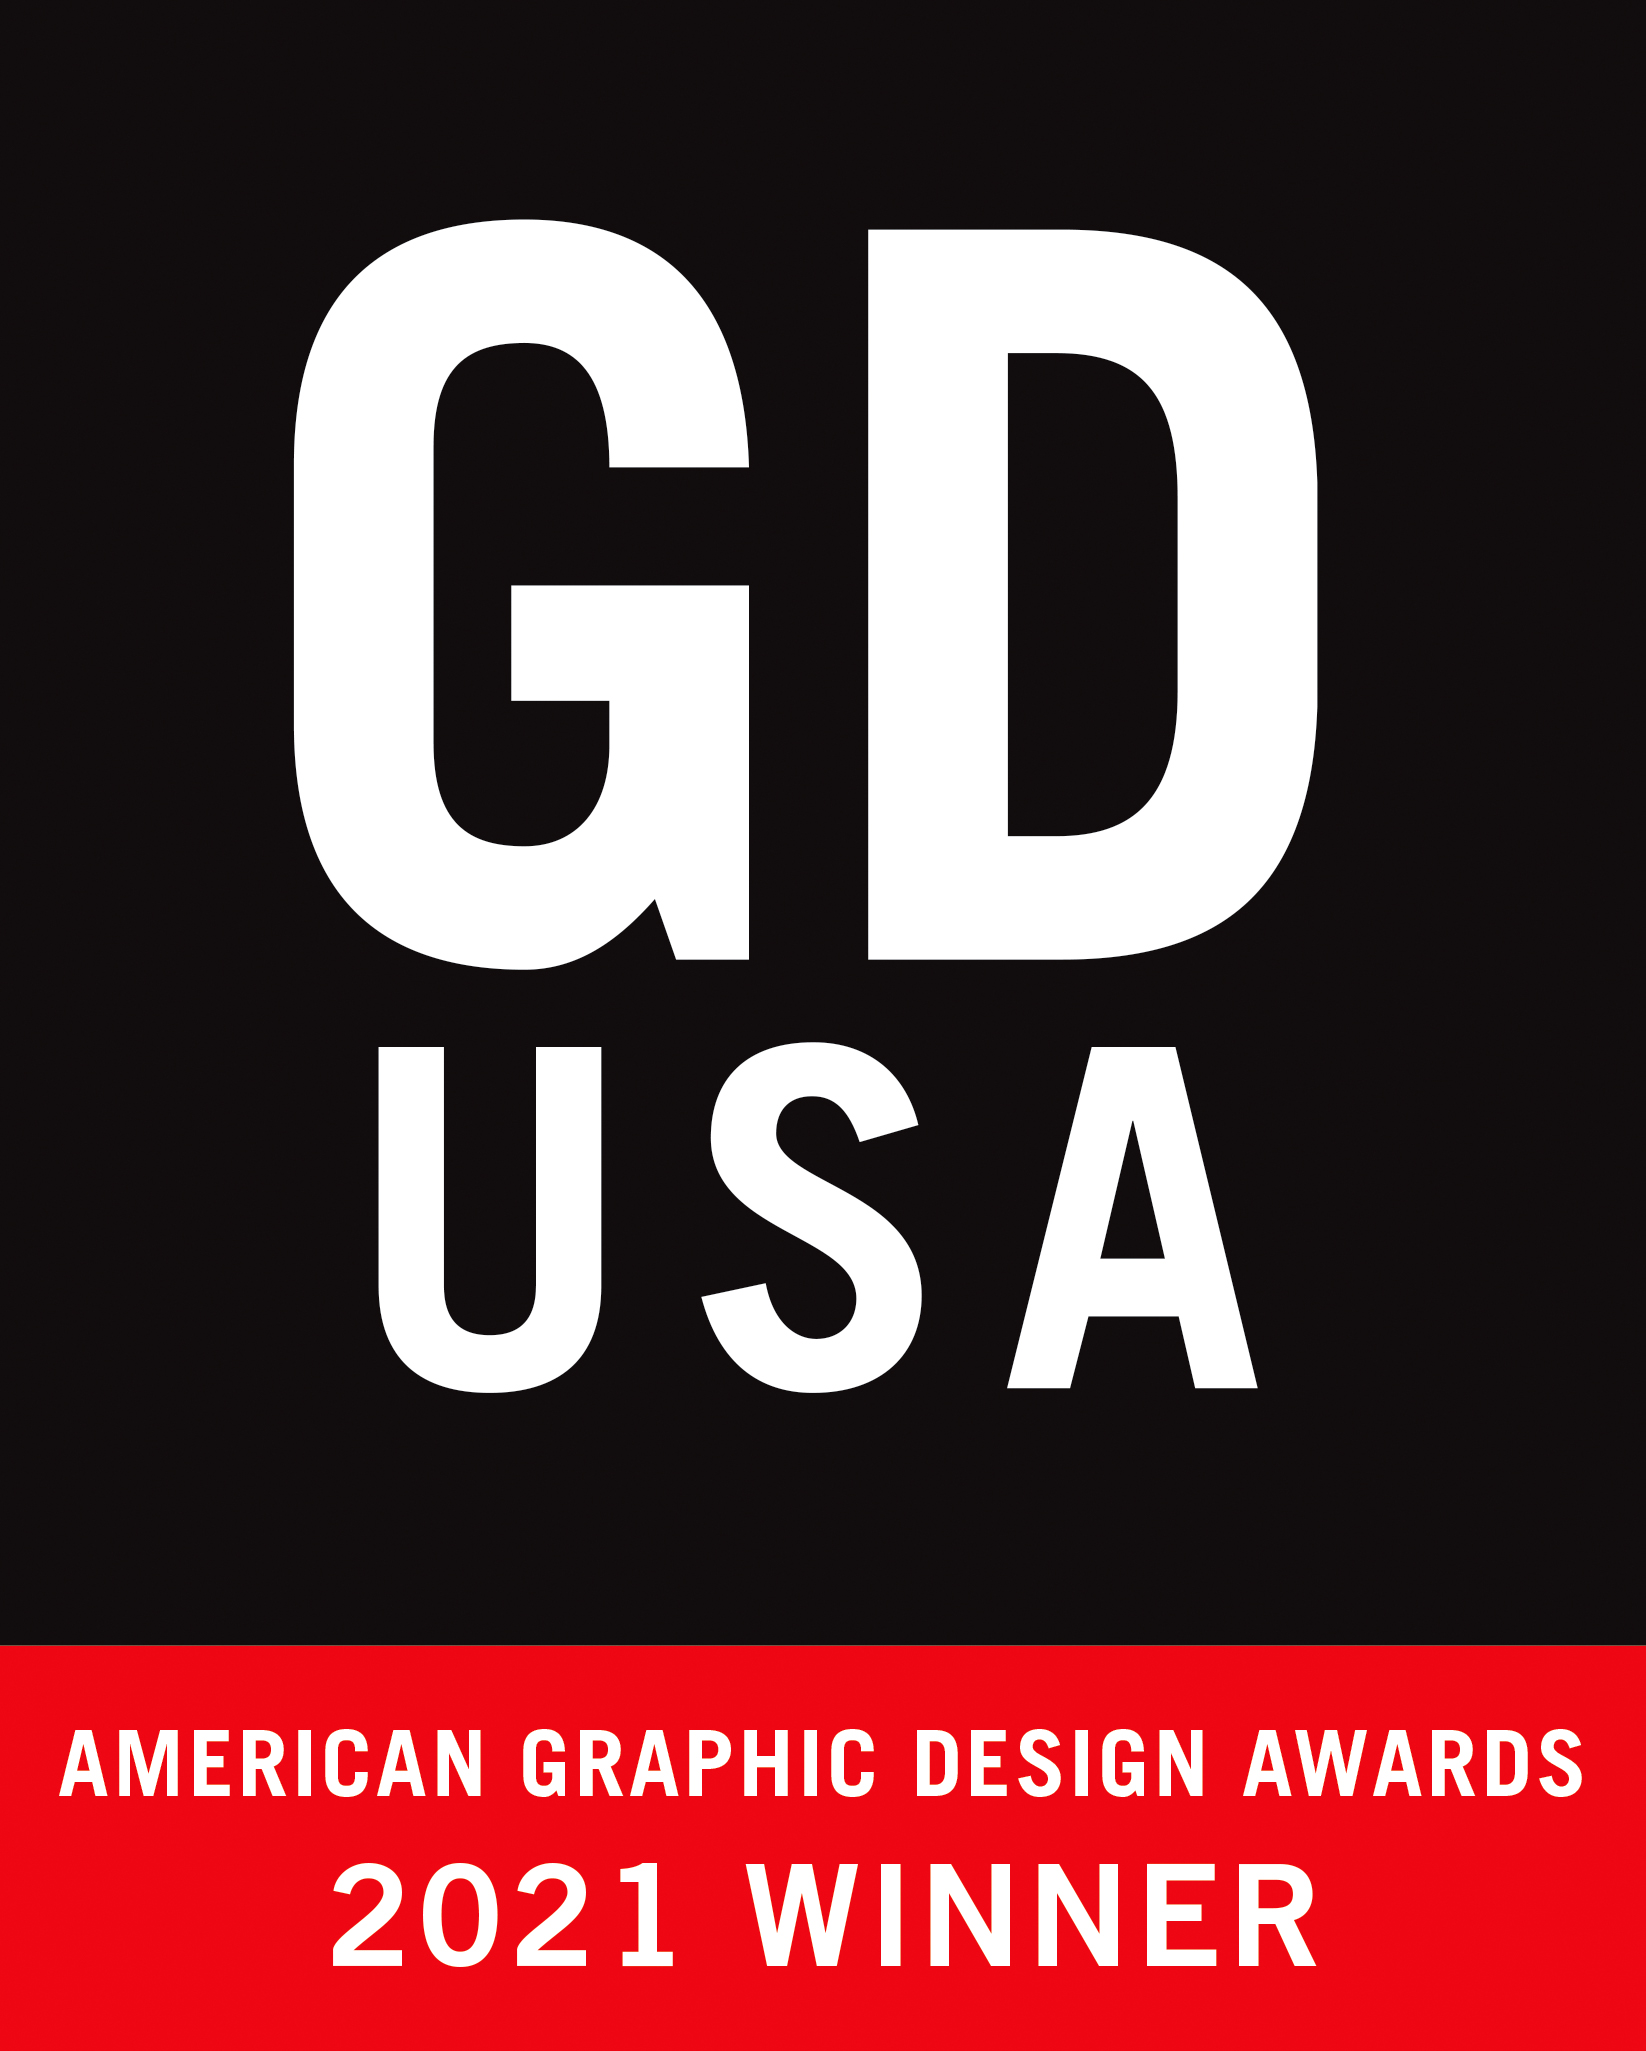 GD-USA_Winner